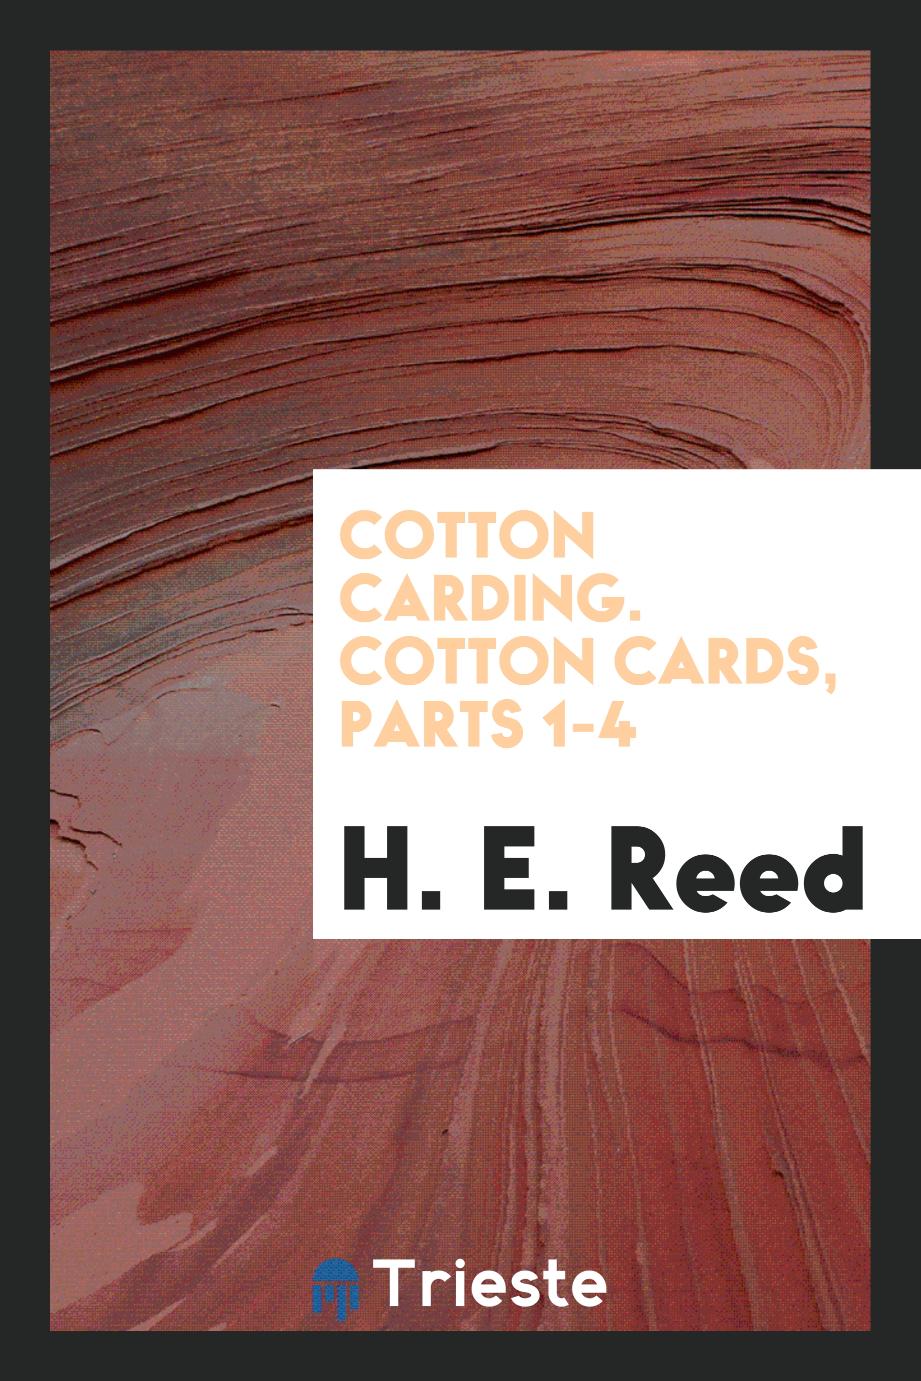 Cotton carding. Cotton cards, parts 1-4